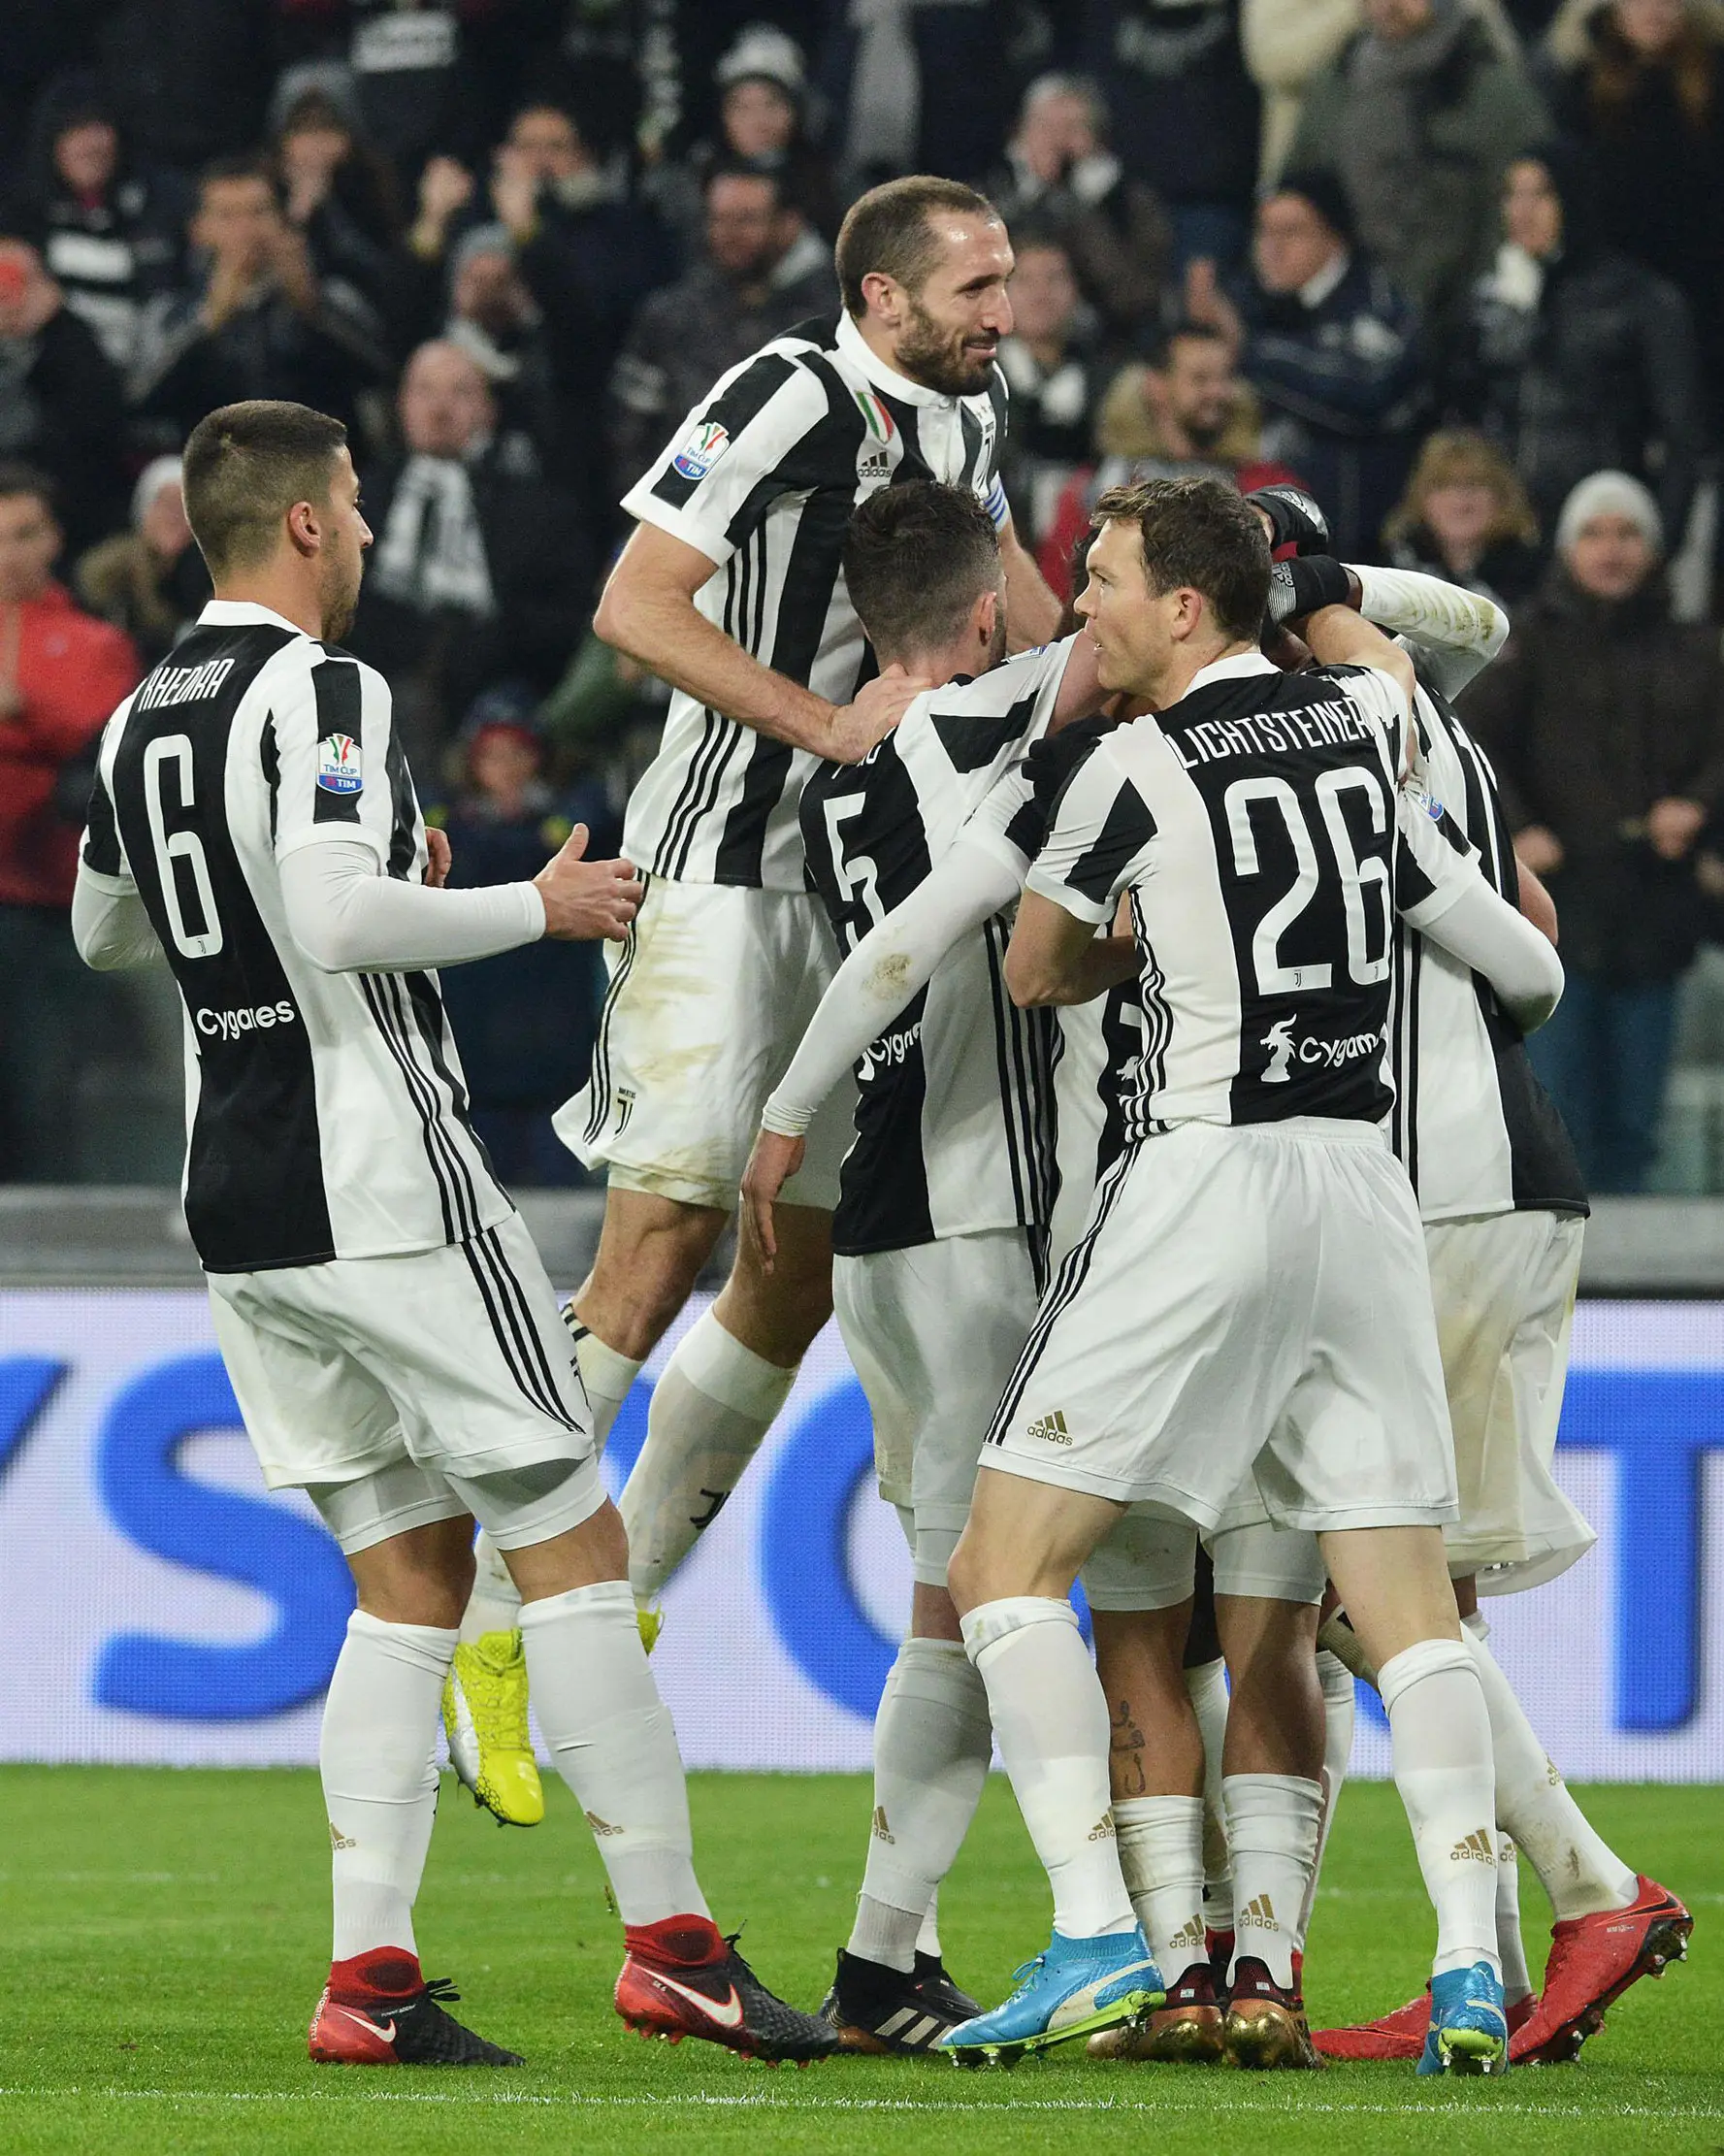 Pemain Juventus merayakan gol Mario Mandzukic ke gawang klub sekota mereka, Torino dalam lanjutan Coppa Italia di Stadion Allianz, Rabu (3/1). Juventus menang dengan skor akhir 2-0 atas klub sekota mereka, Torino. (Andrea Di Marco/ANSA via AP)